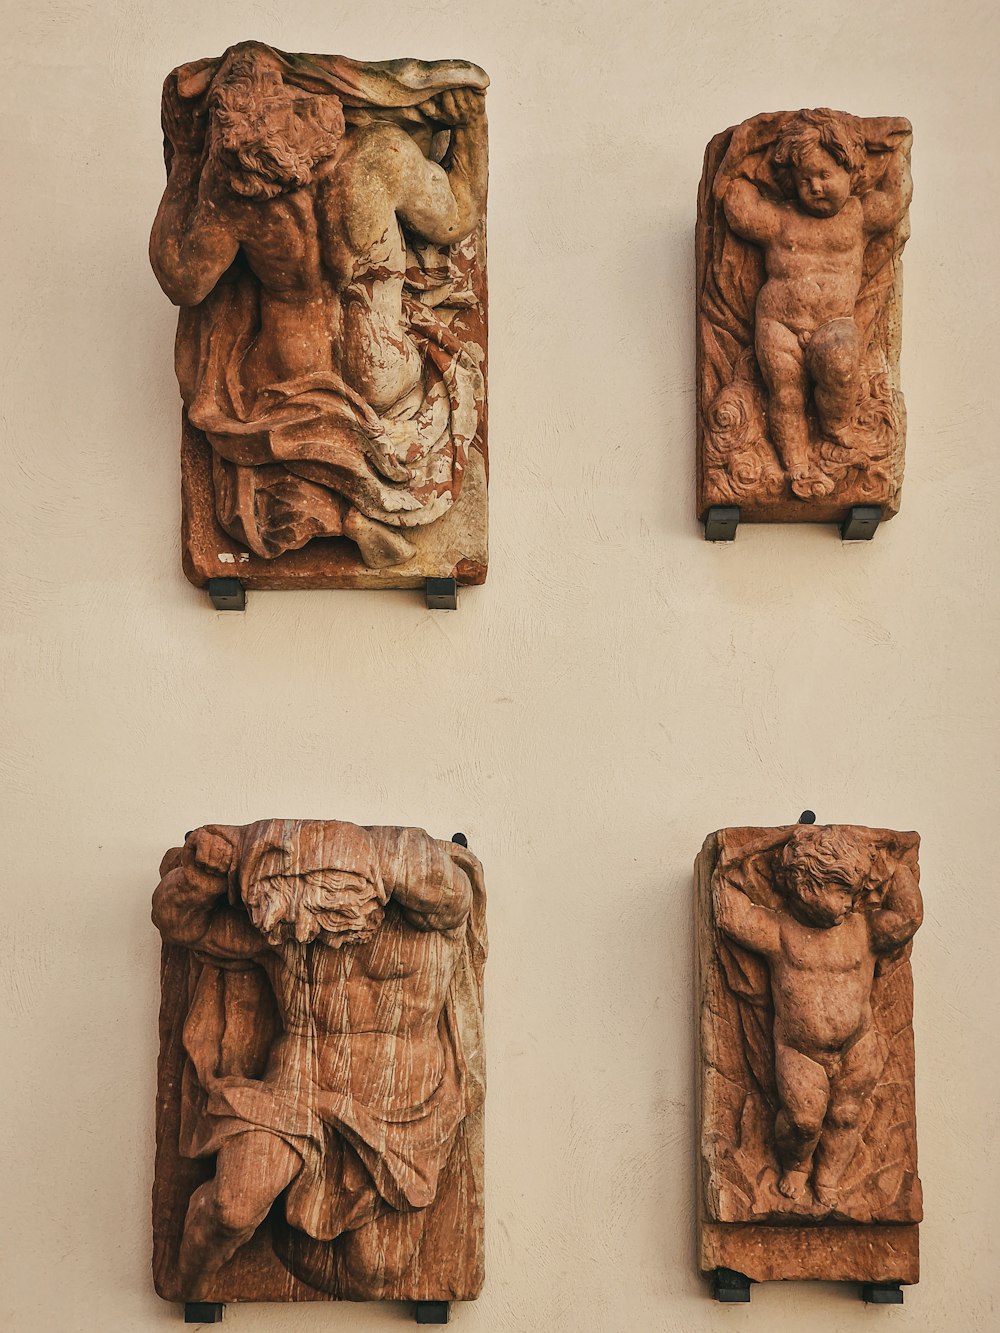 Un grupo de cuatro esculturas de madera tallada en una pared